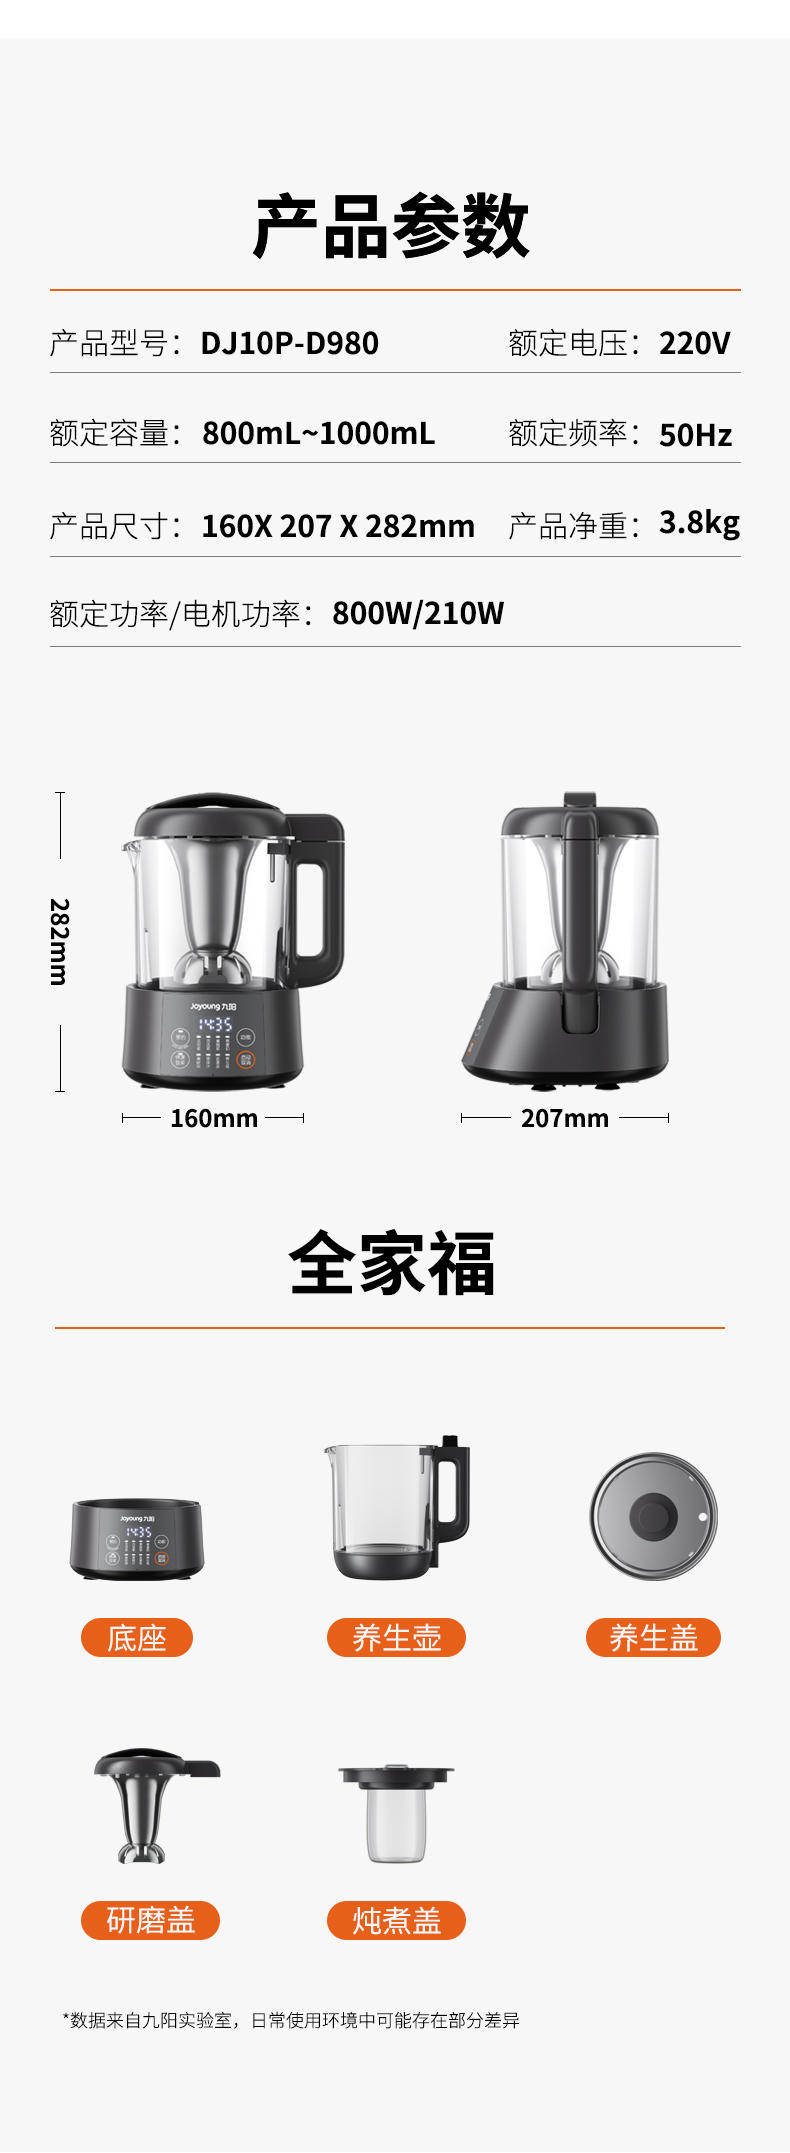 九阳/Joyoung 豆浆机破壁机智能预约家用自动加热多功能养生壶